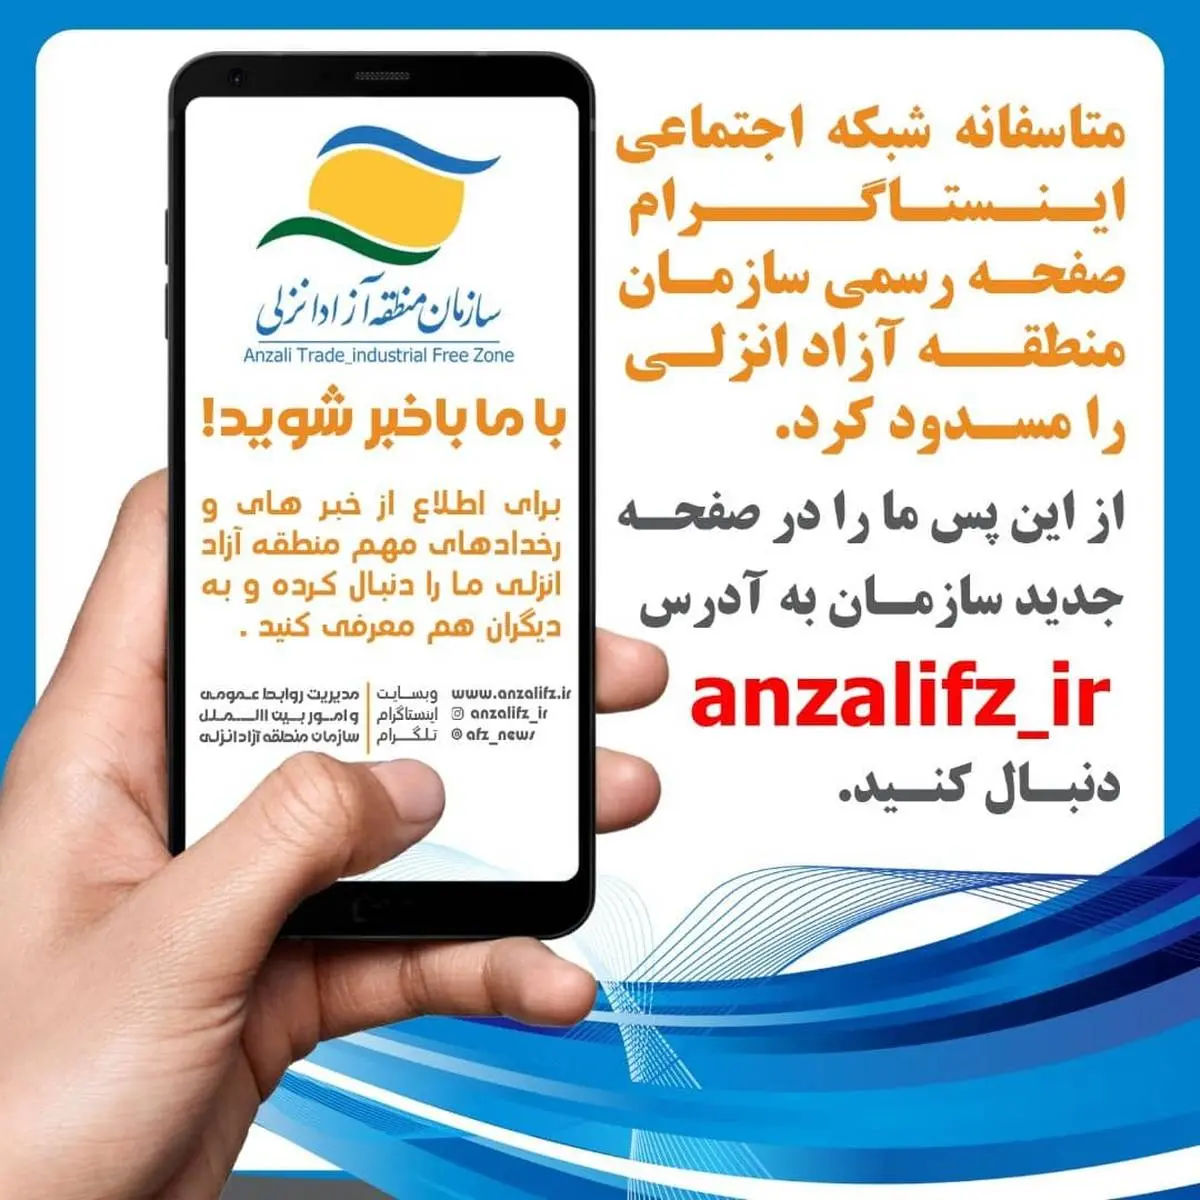 صفحه اینستاگرام سازمان منطقه آزاد انزلی مسدود شد